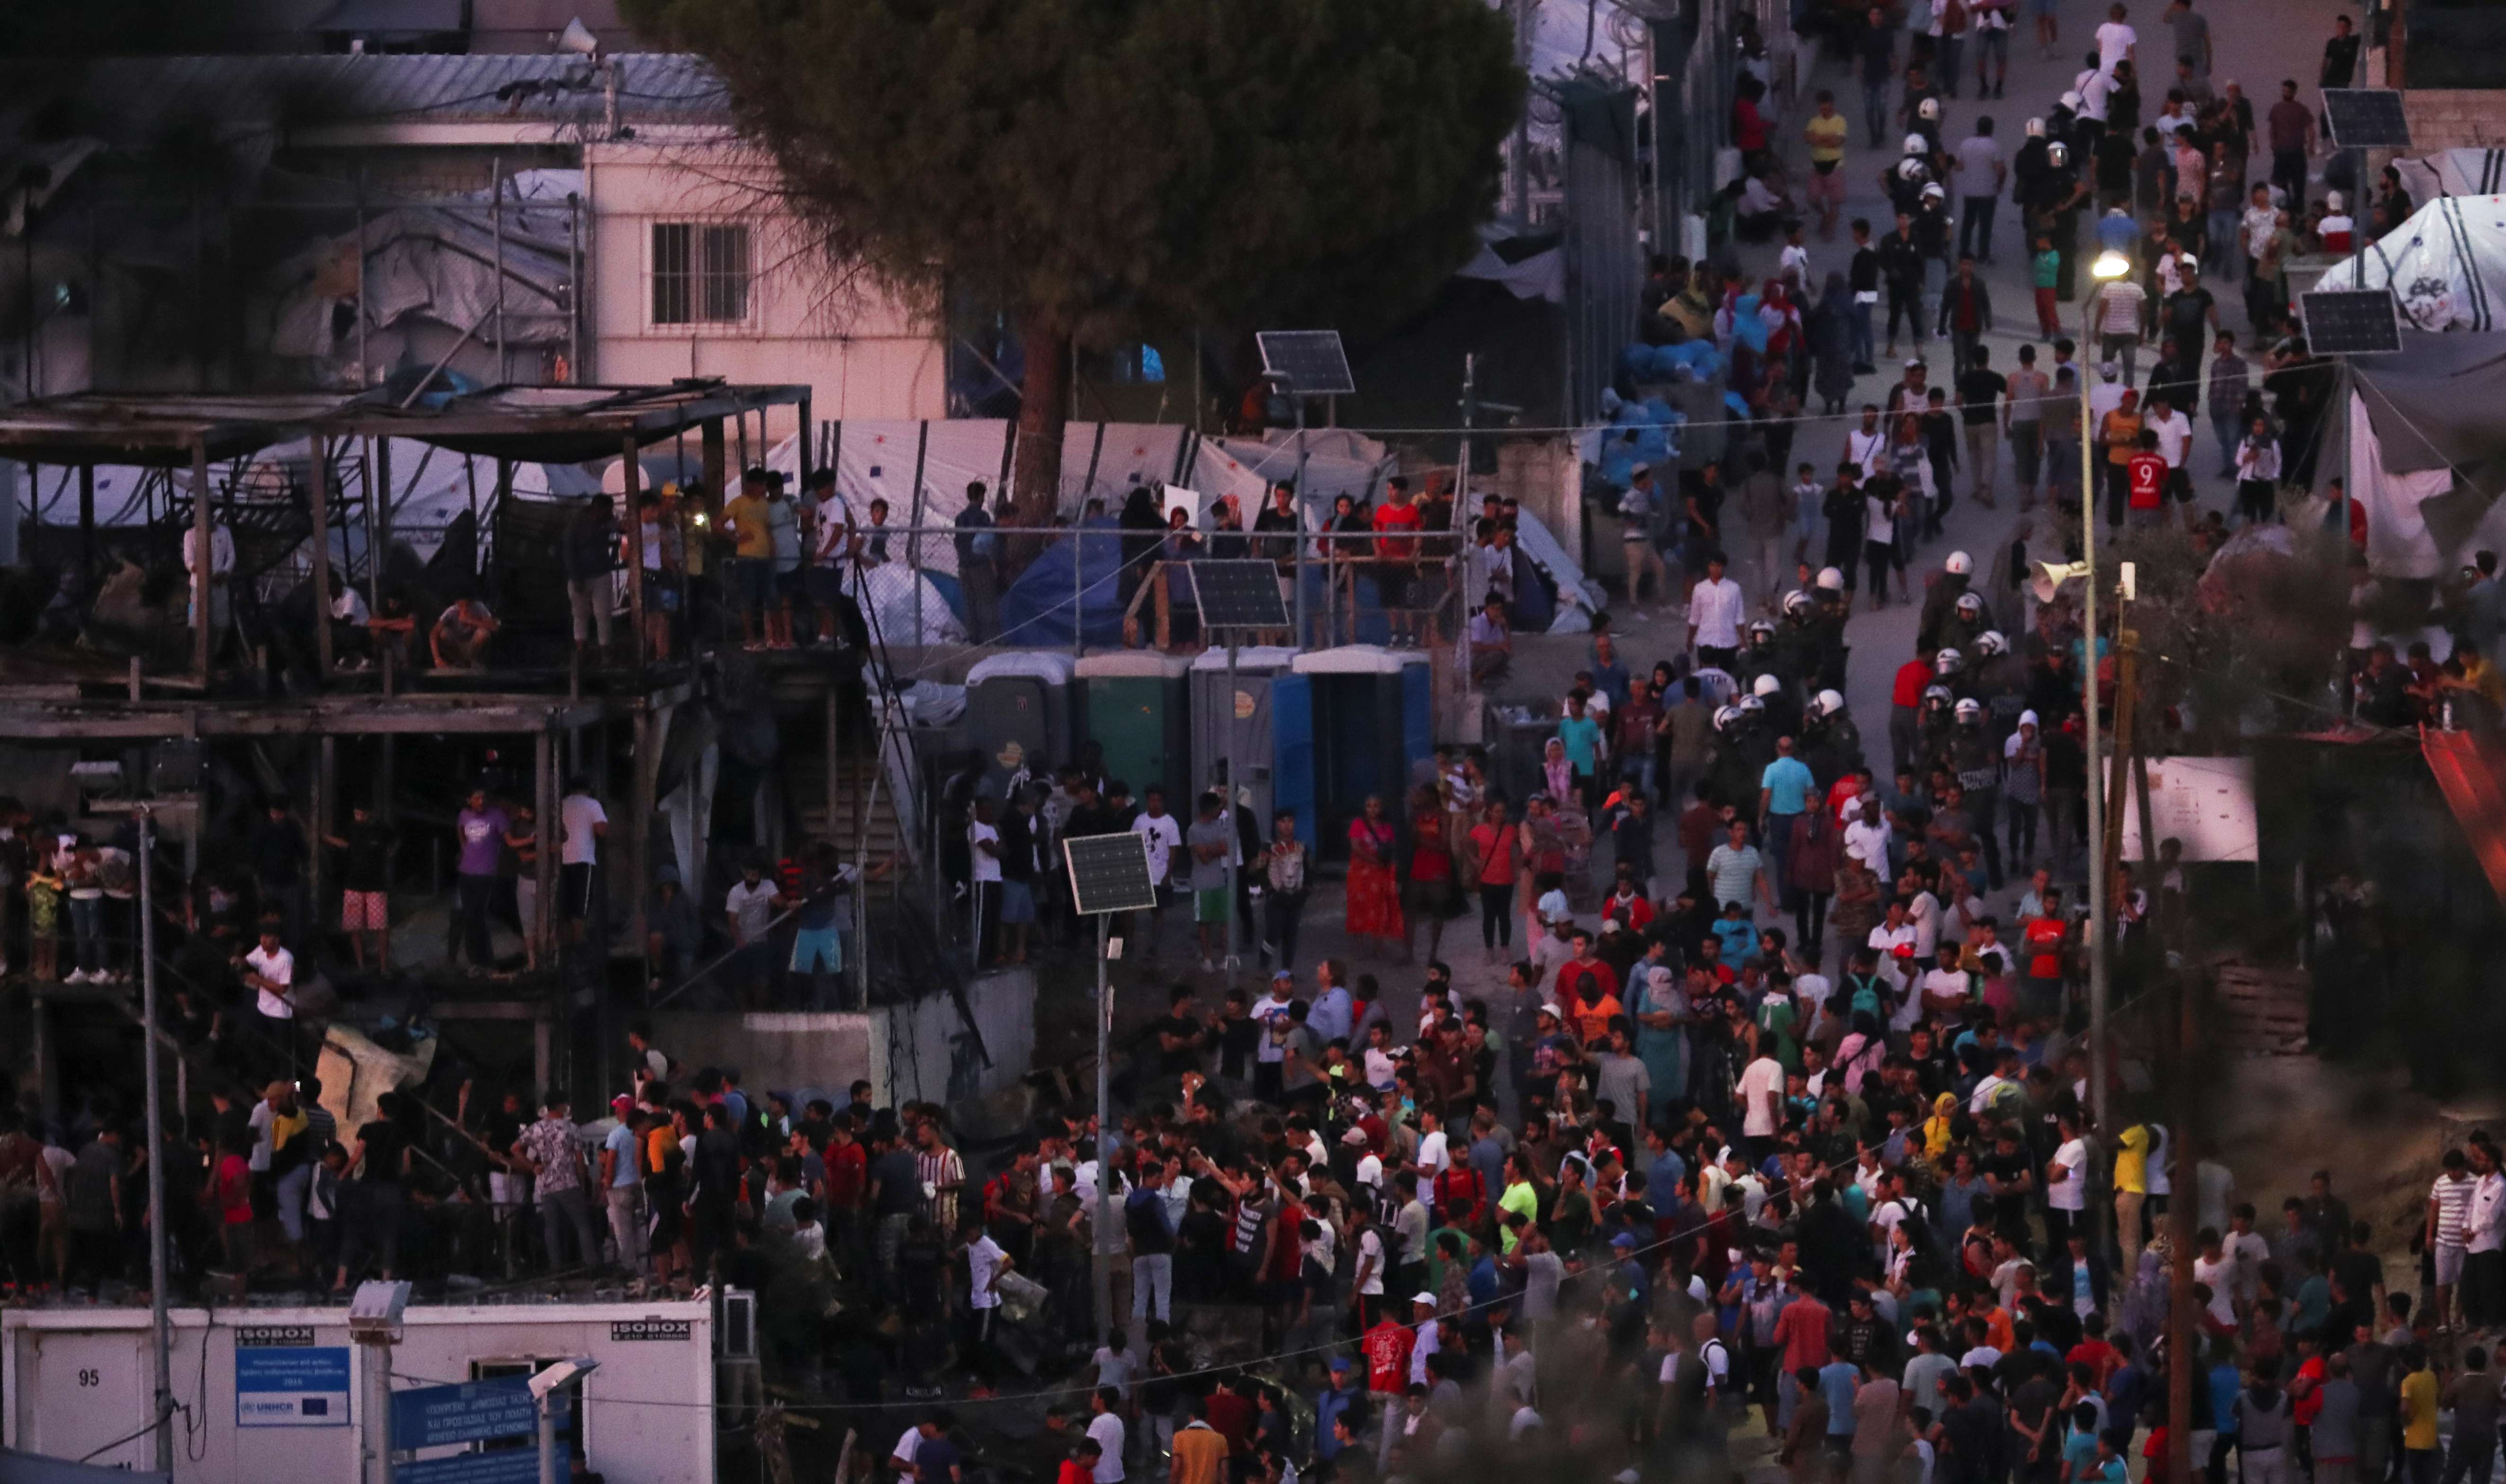 ΣΥΡΙΖΑ: Αντί να στέλνουν τα ΜΑΤ, να αποσυμφορήσουν τη Μόρια